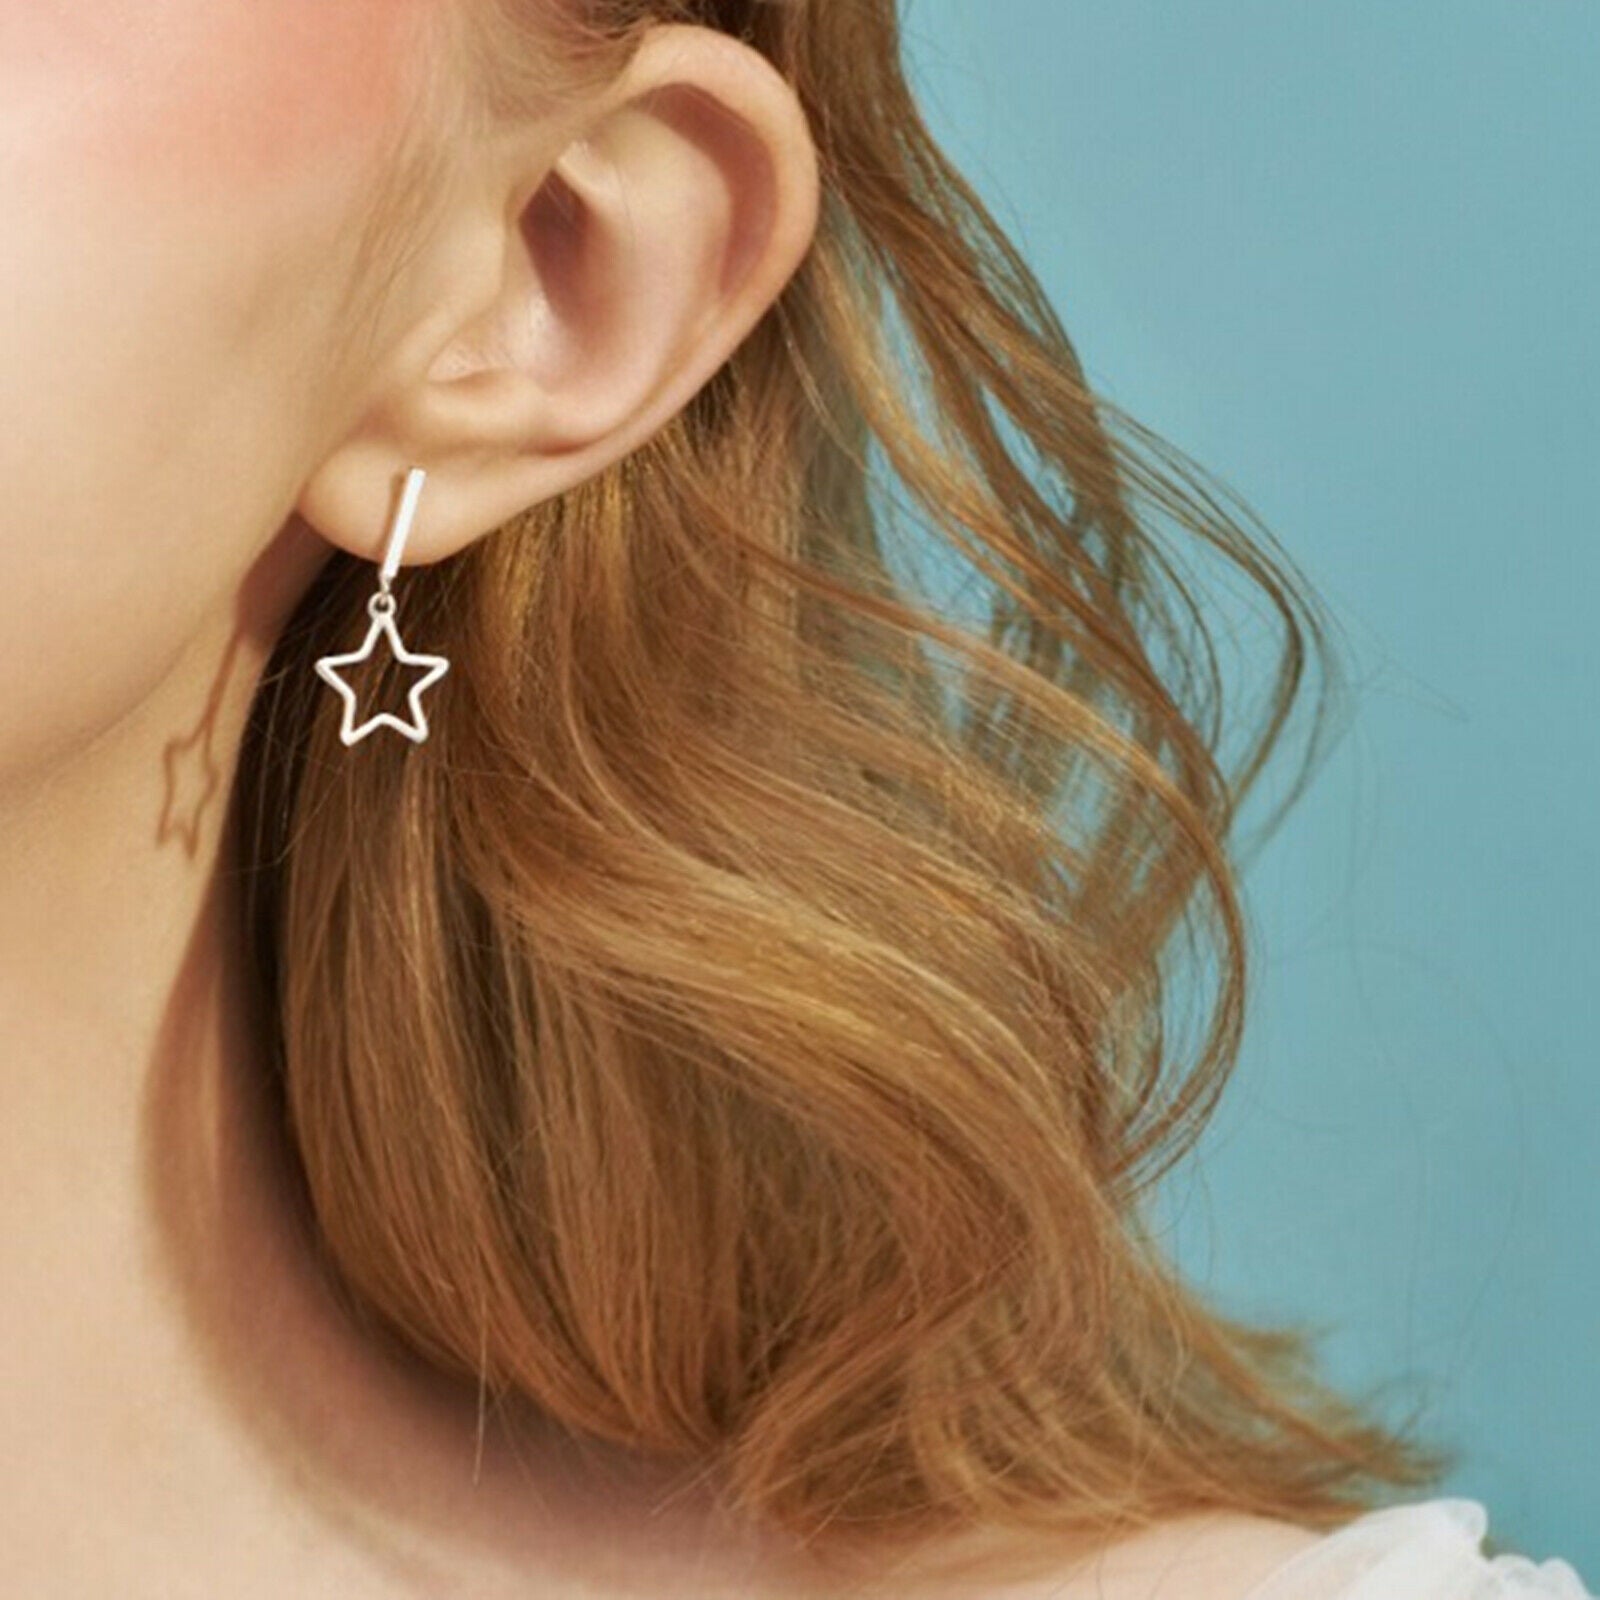 Sterling Silver Hollow Star Moon Bar Post Earrings with Line Drop - sugarkittenlondon